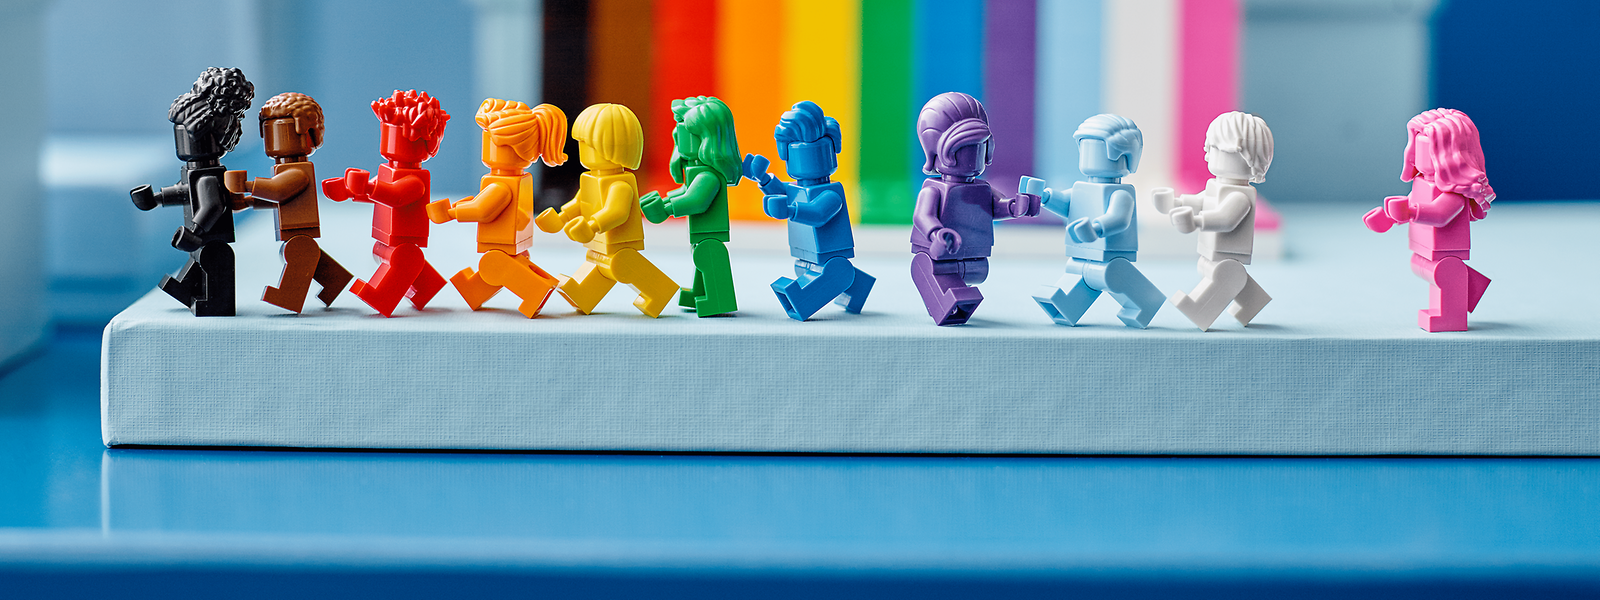 Die erste Pride-Kollektion von Lego.